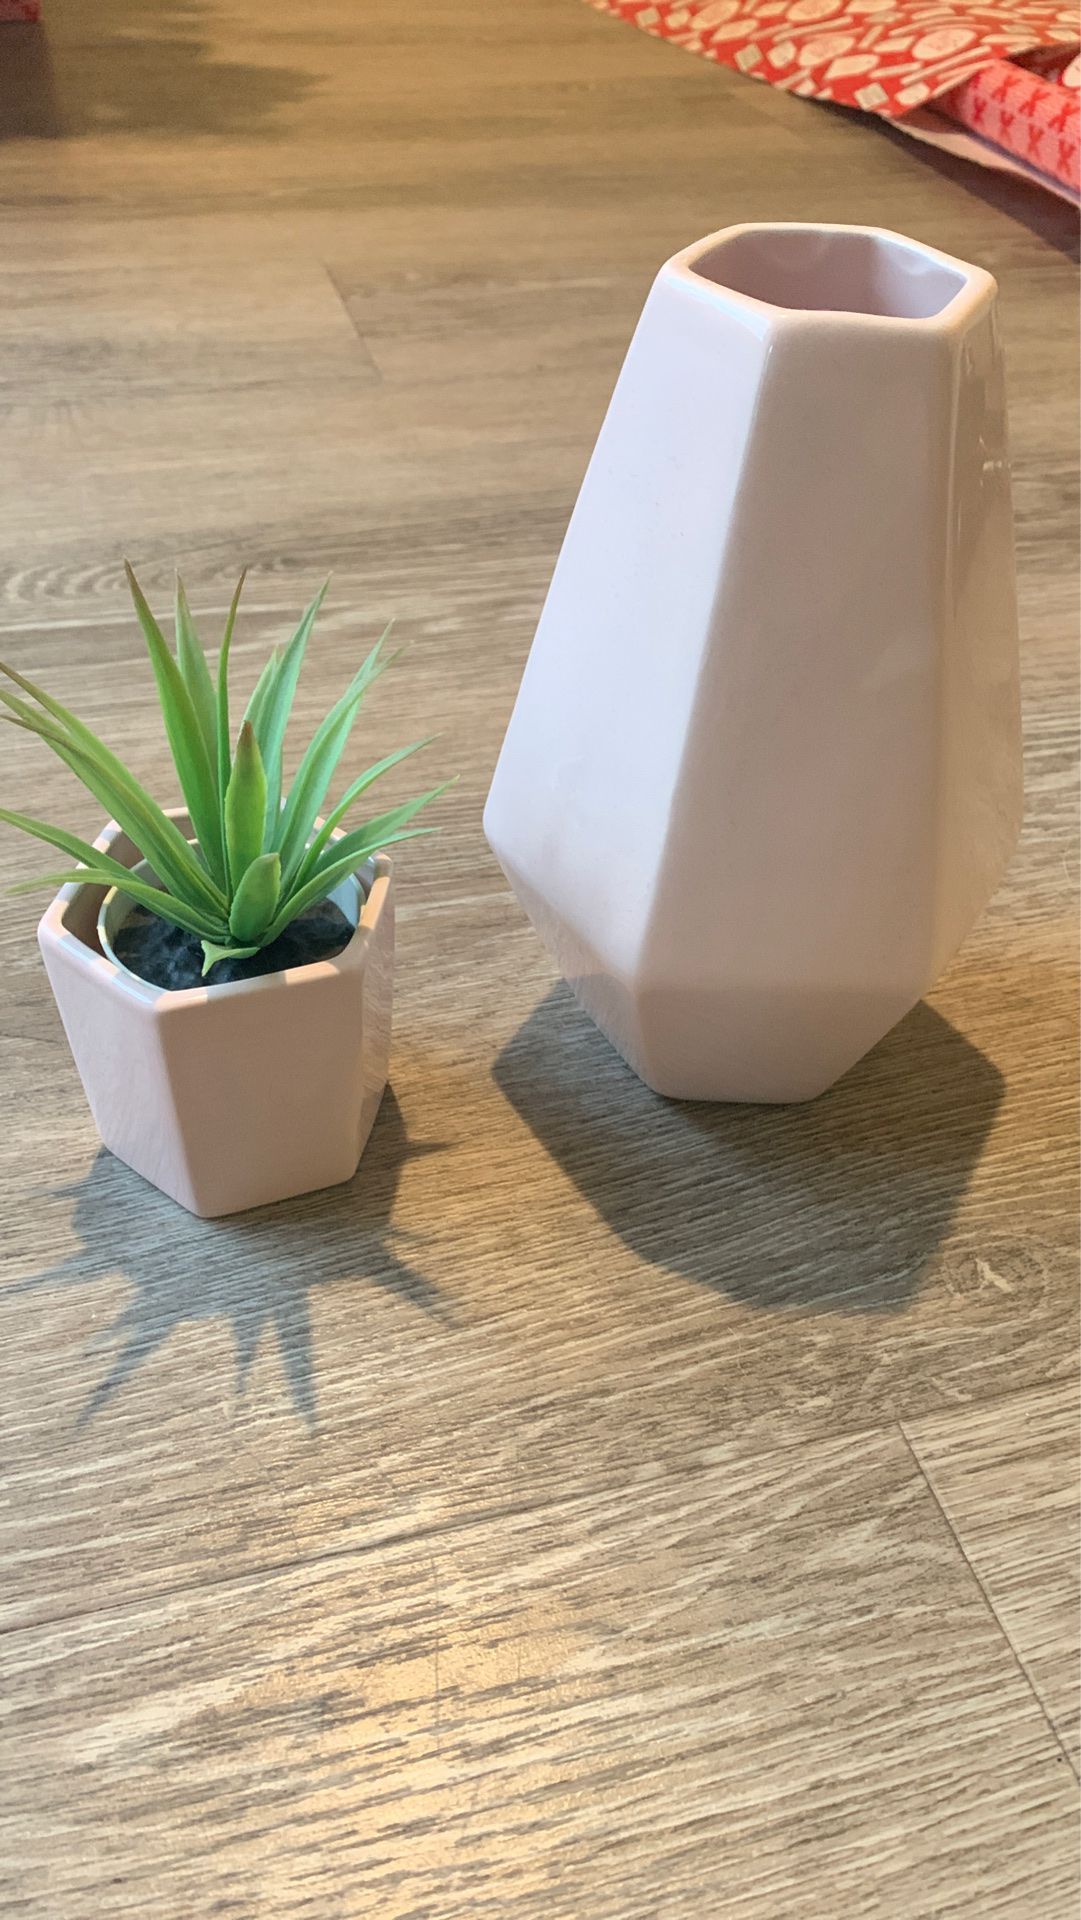 Vase & Little plant pot w/ fake plant